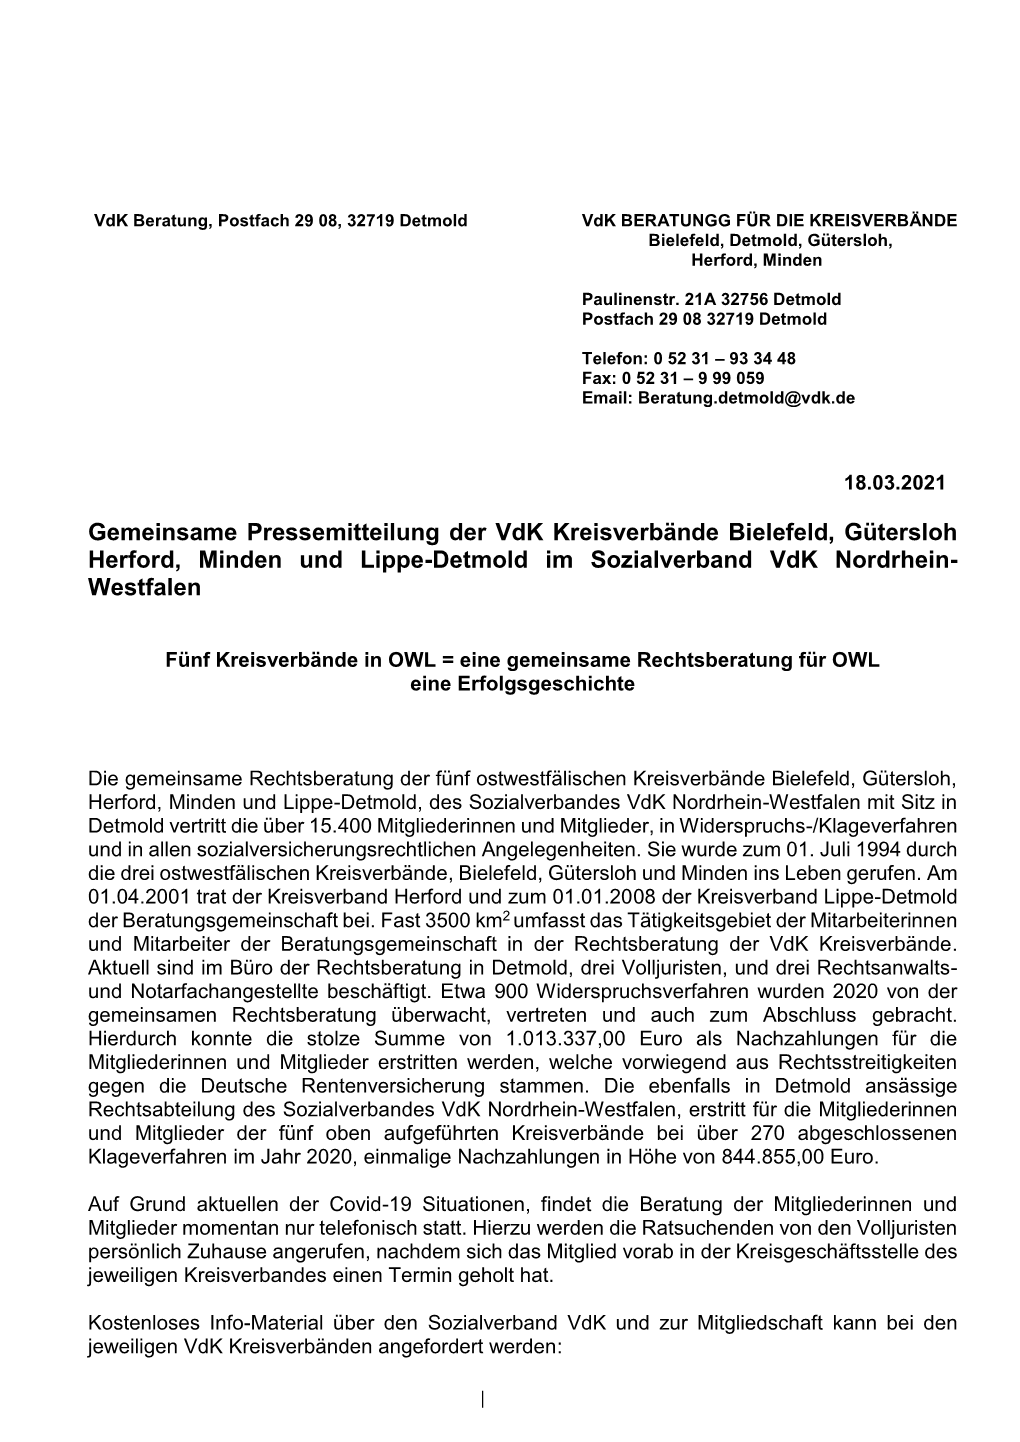 Gemeinsame Pressemitteilung Der Vdk Kreisverbände Bielefeld, Gütersloh Herford, Minden Und Lippe-Detmold Im Sozialverband Vdk Nordrhein- Westfalen